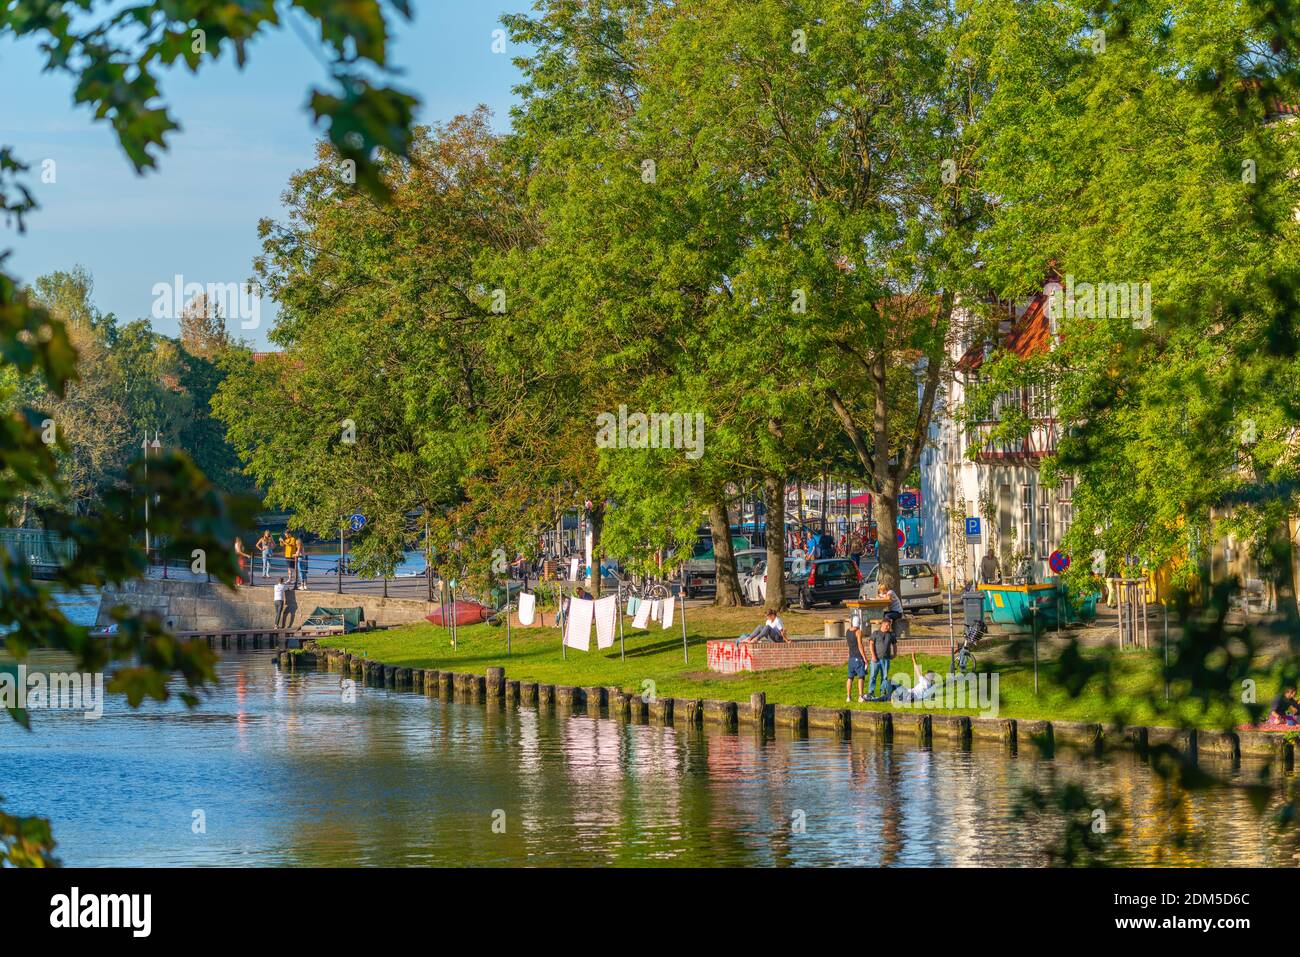 An der Obertrave, una strada popolare lungo il fiume trave, Città anseatica di Lübeck, Patrimonio dell'Umanità dell'UNESCO, Schleswig-Holstein, Germania del Nord, Europa Foto Stock